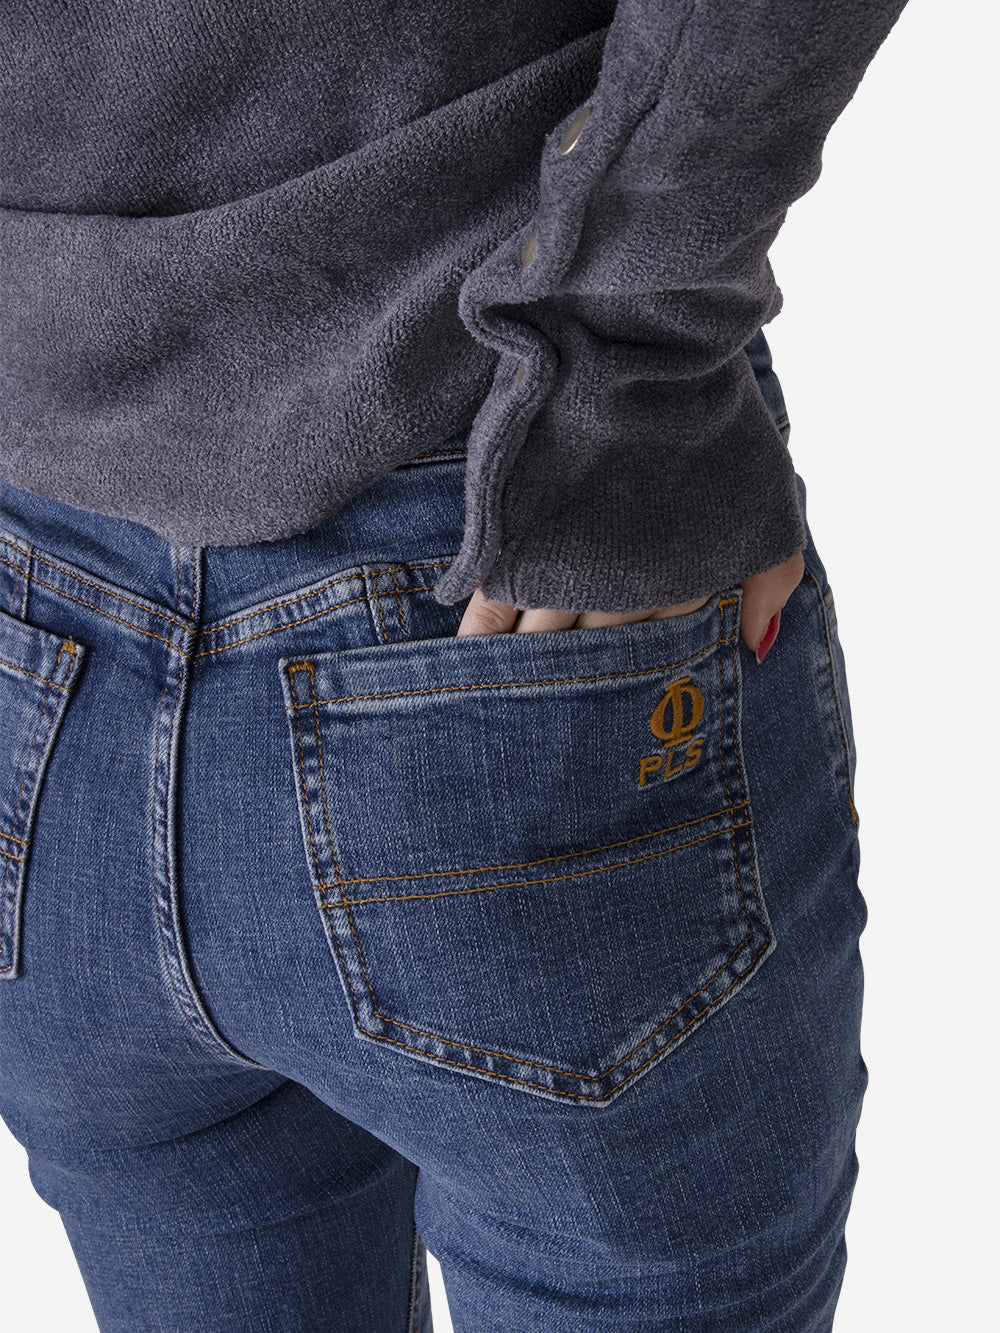 PHILOSOPHY DI LORENZO SERAFINI Jeans a zampa Blu Urbanstaroma